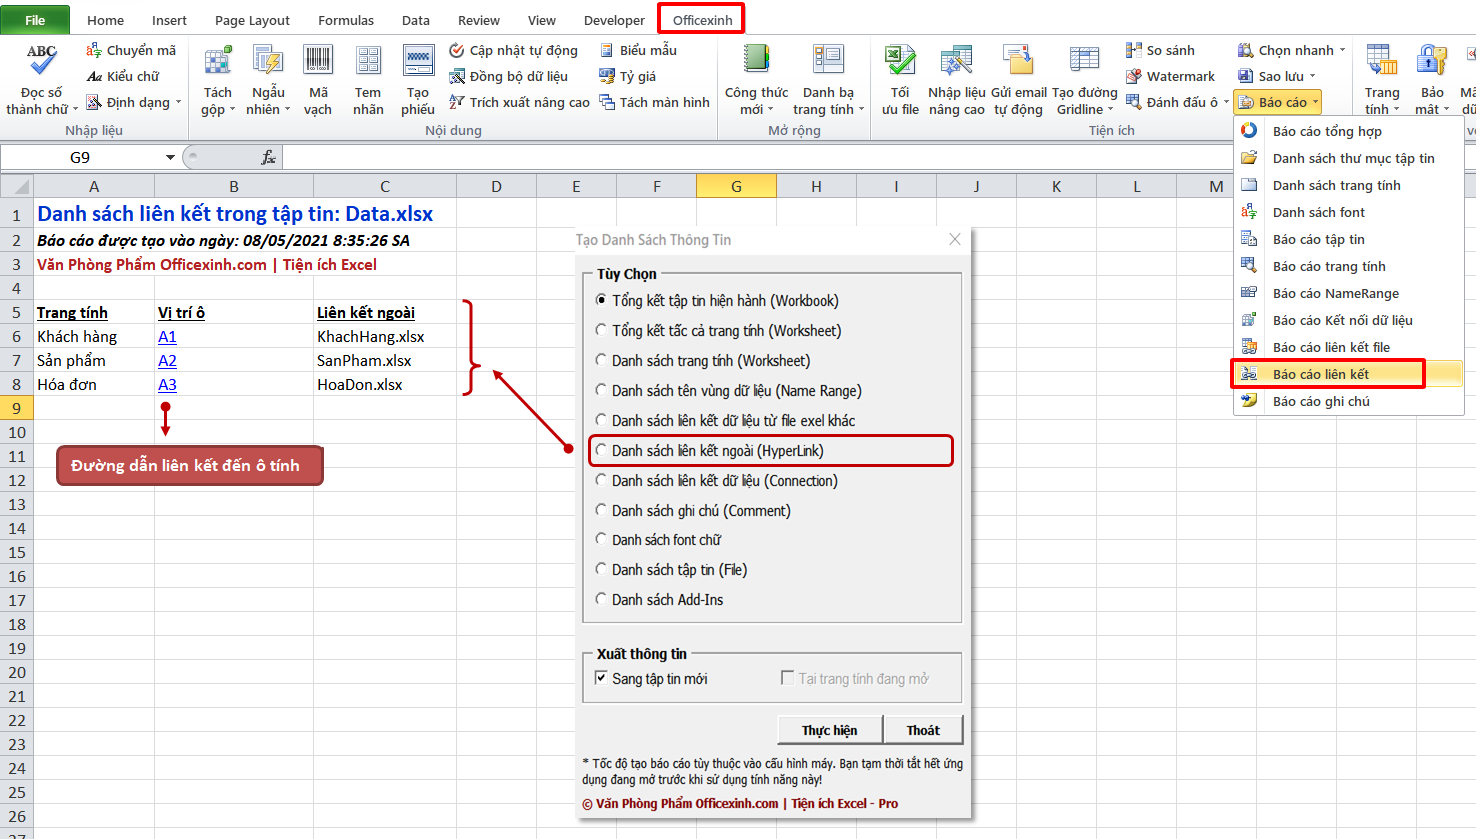 Tạo danh sách đường dẫn liên kết trong Excel